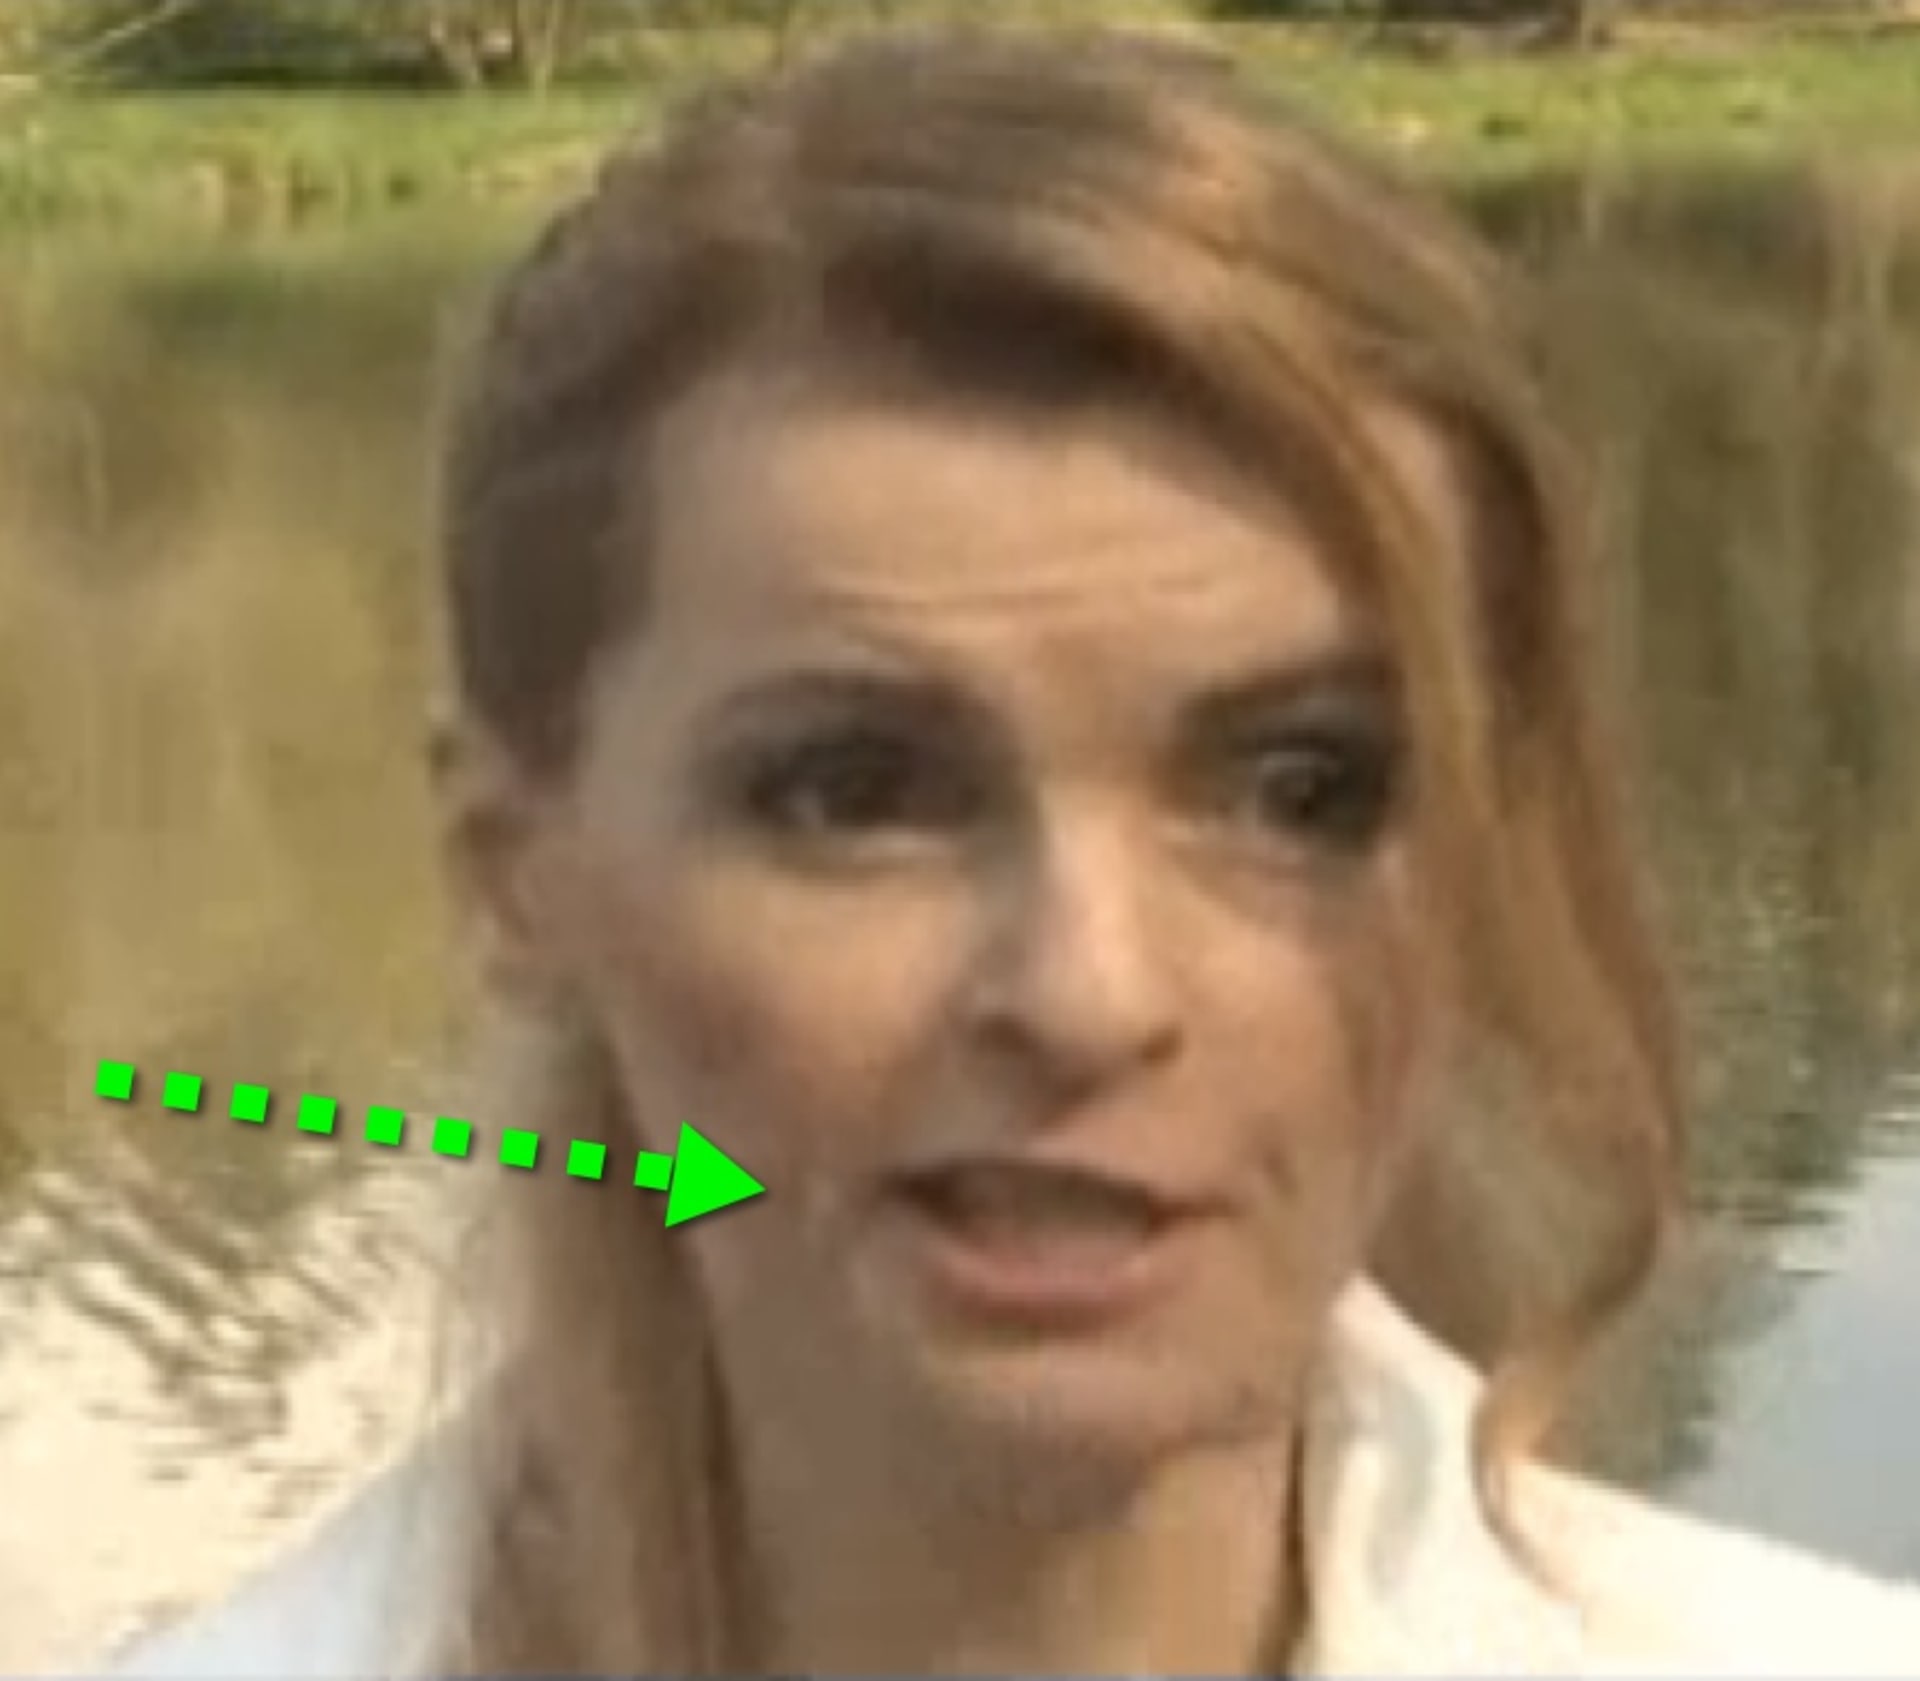 video VIP zprávy: Iveta Bartošová vypadá, jako by prodělala mozkovou příhodu. S jednou částí tváře téměř nepohybuje